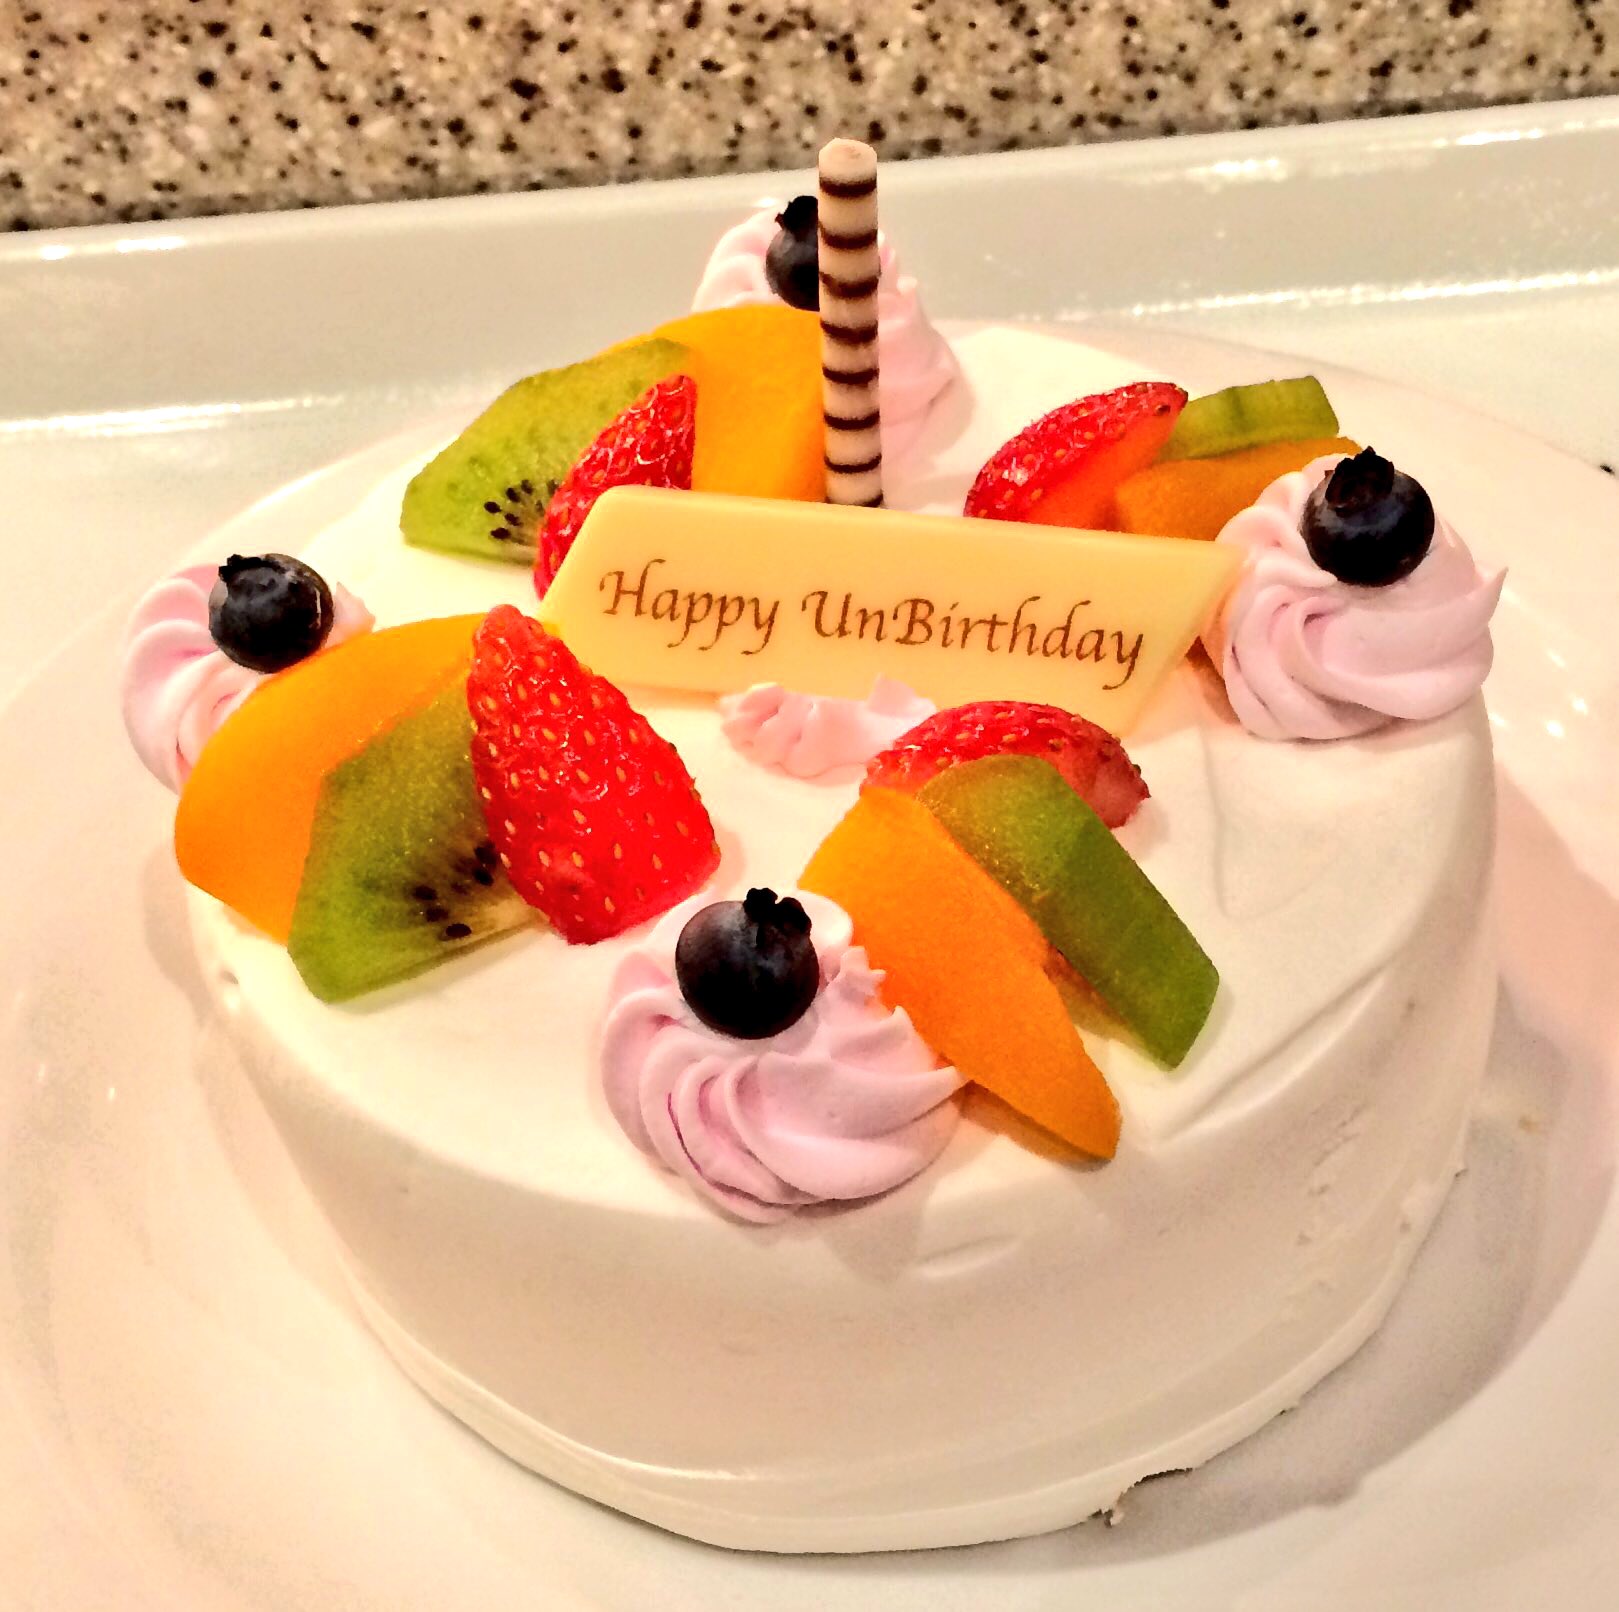 りぃ 昨日は千賀さんのお誕生日のお祝いでケーキを 今日は 何でもない日なのでアンバースデーケーキをww 何でもない 日おめでとう 千賀健永生誕祭 アンバースデーケーキ ディズニーランド クイーンオブハートのバンケットホール T Co